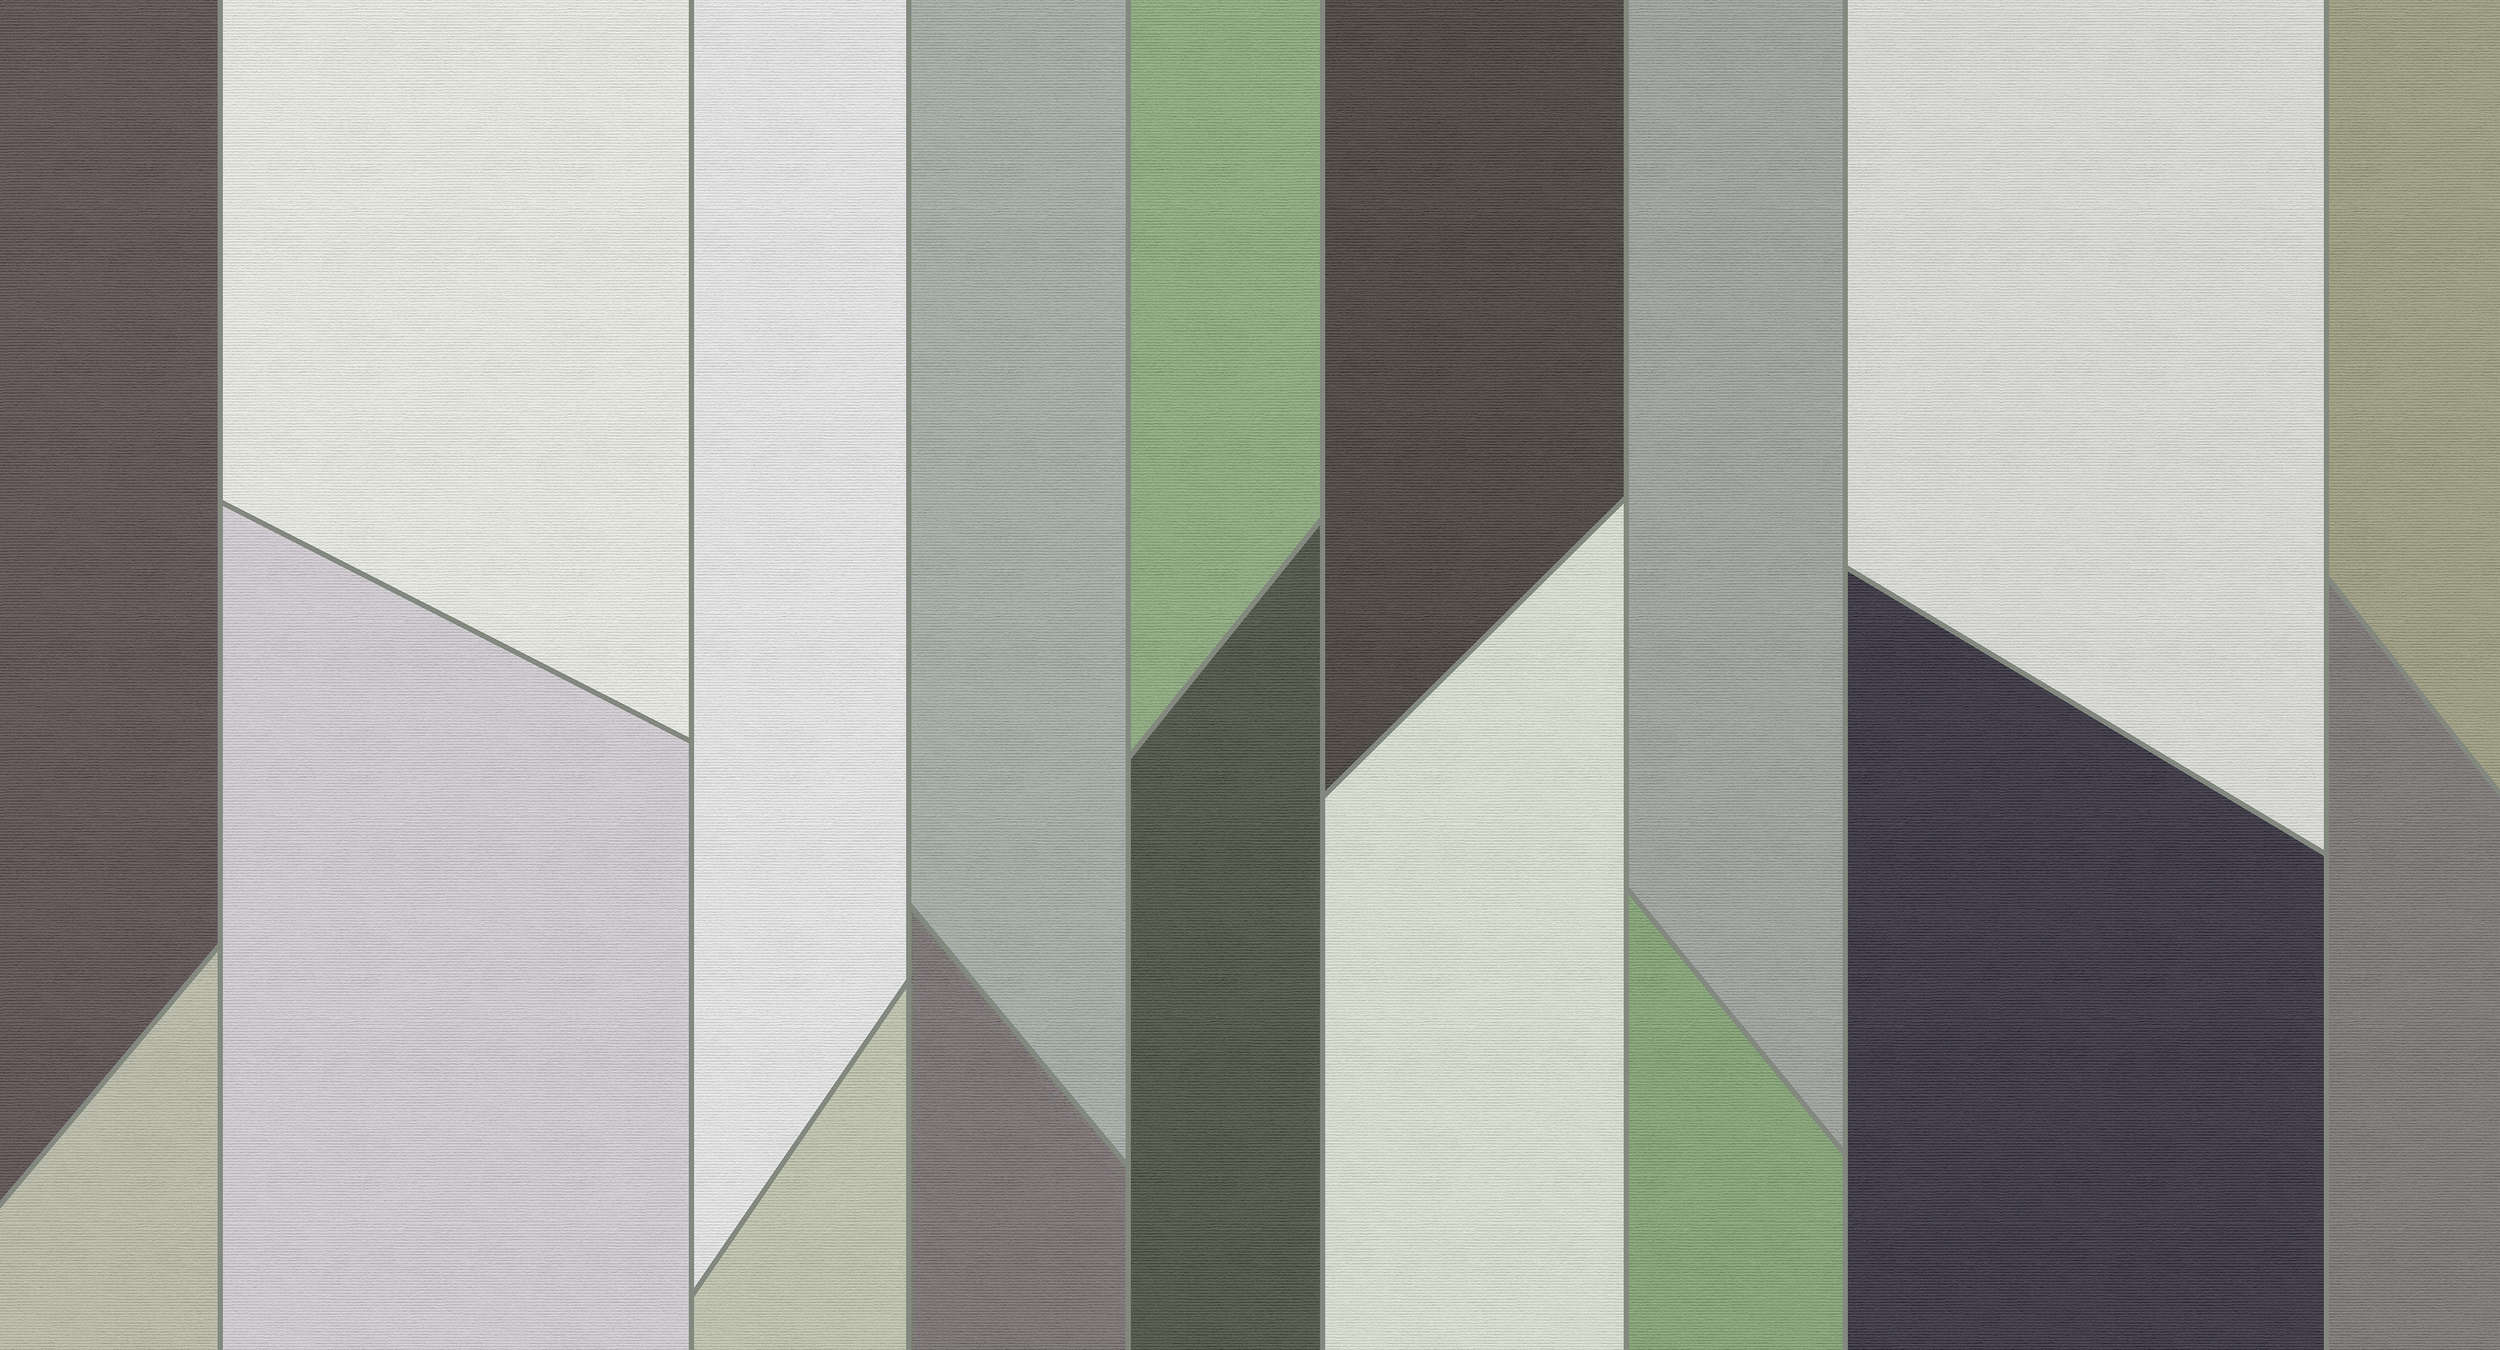             Geometry 3 - Gestreept behang in ribbelstructuur met kleurrijk retrodesign - Groen, Paars | Mat glad vlies
        